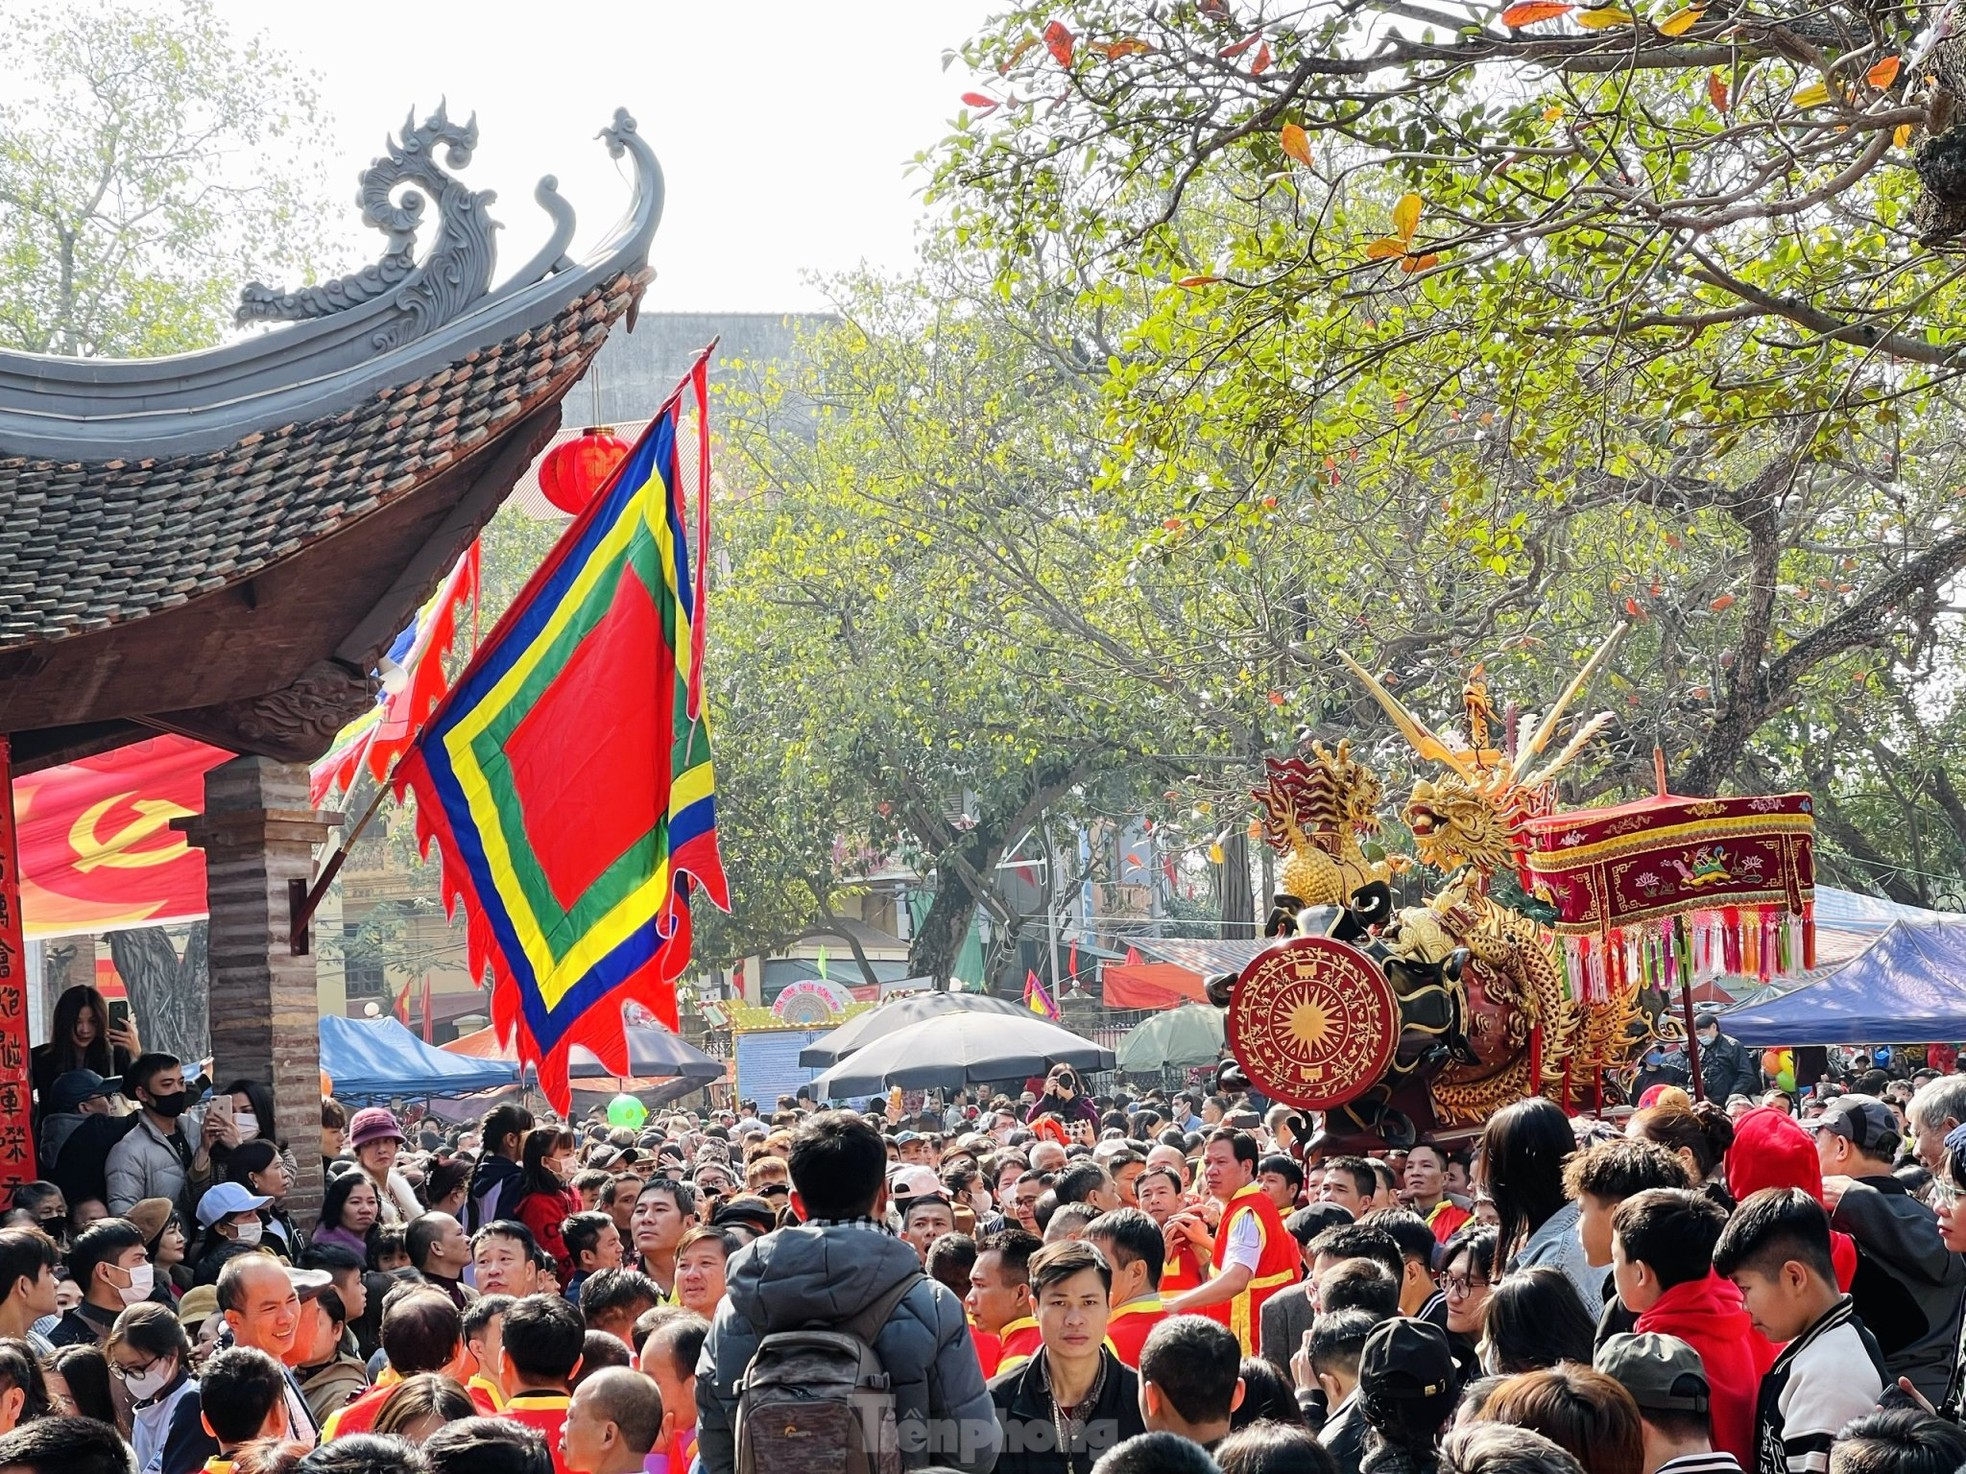 Tưng bừng lễ hội rước pháo khổng lồ ở làng Đồng Kỵ - Ảnh 12.